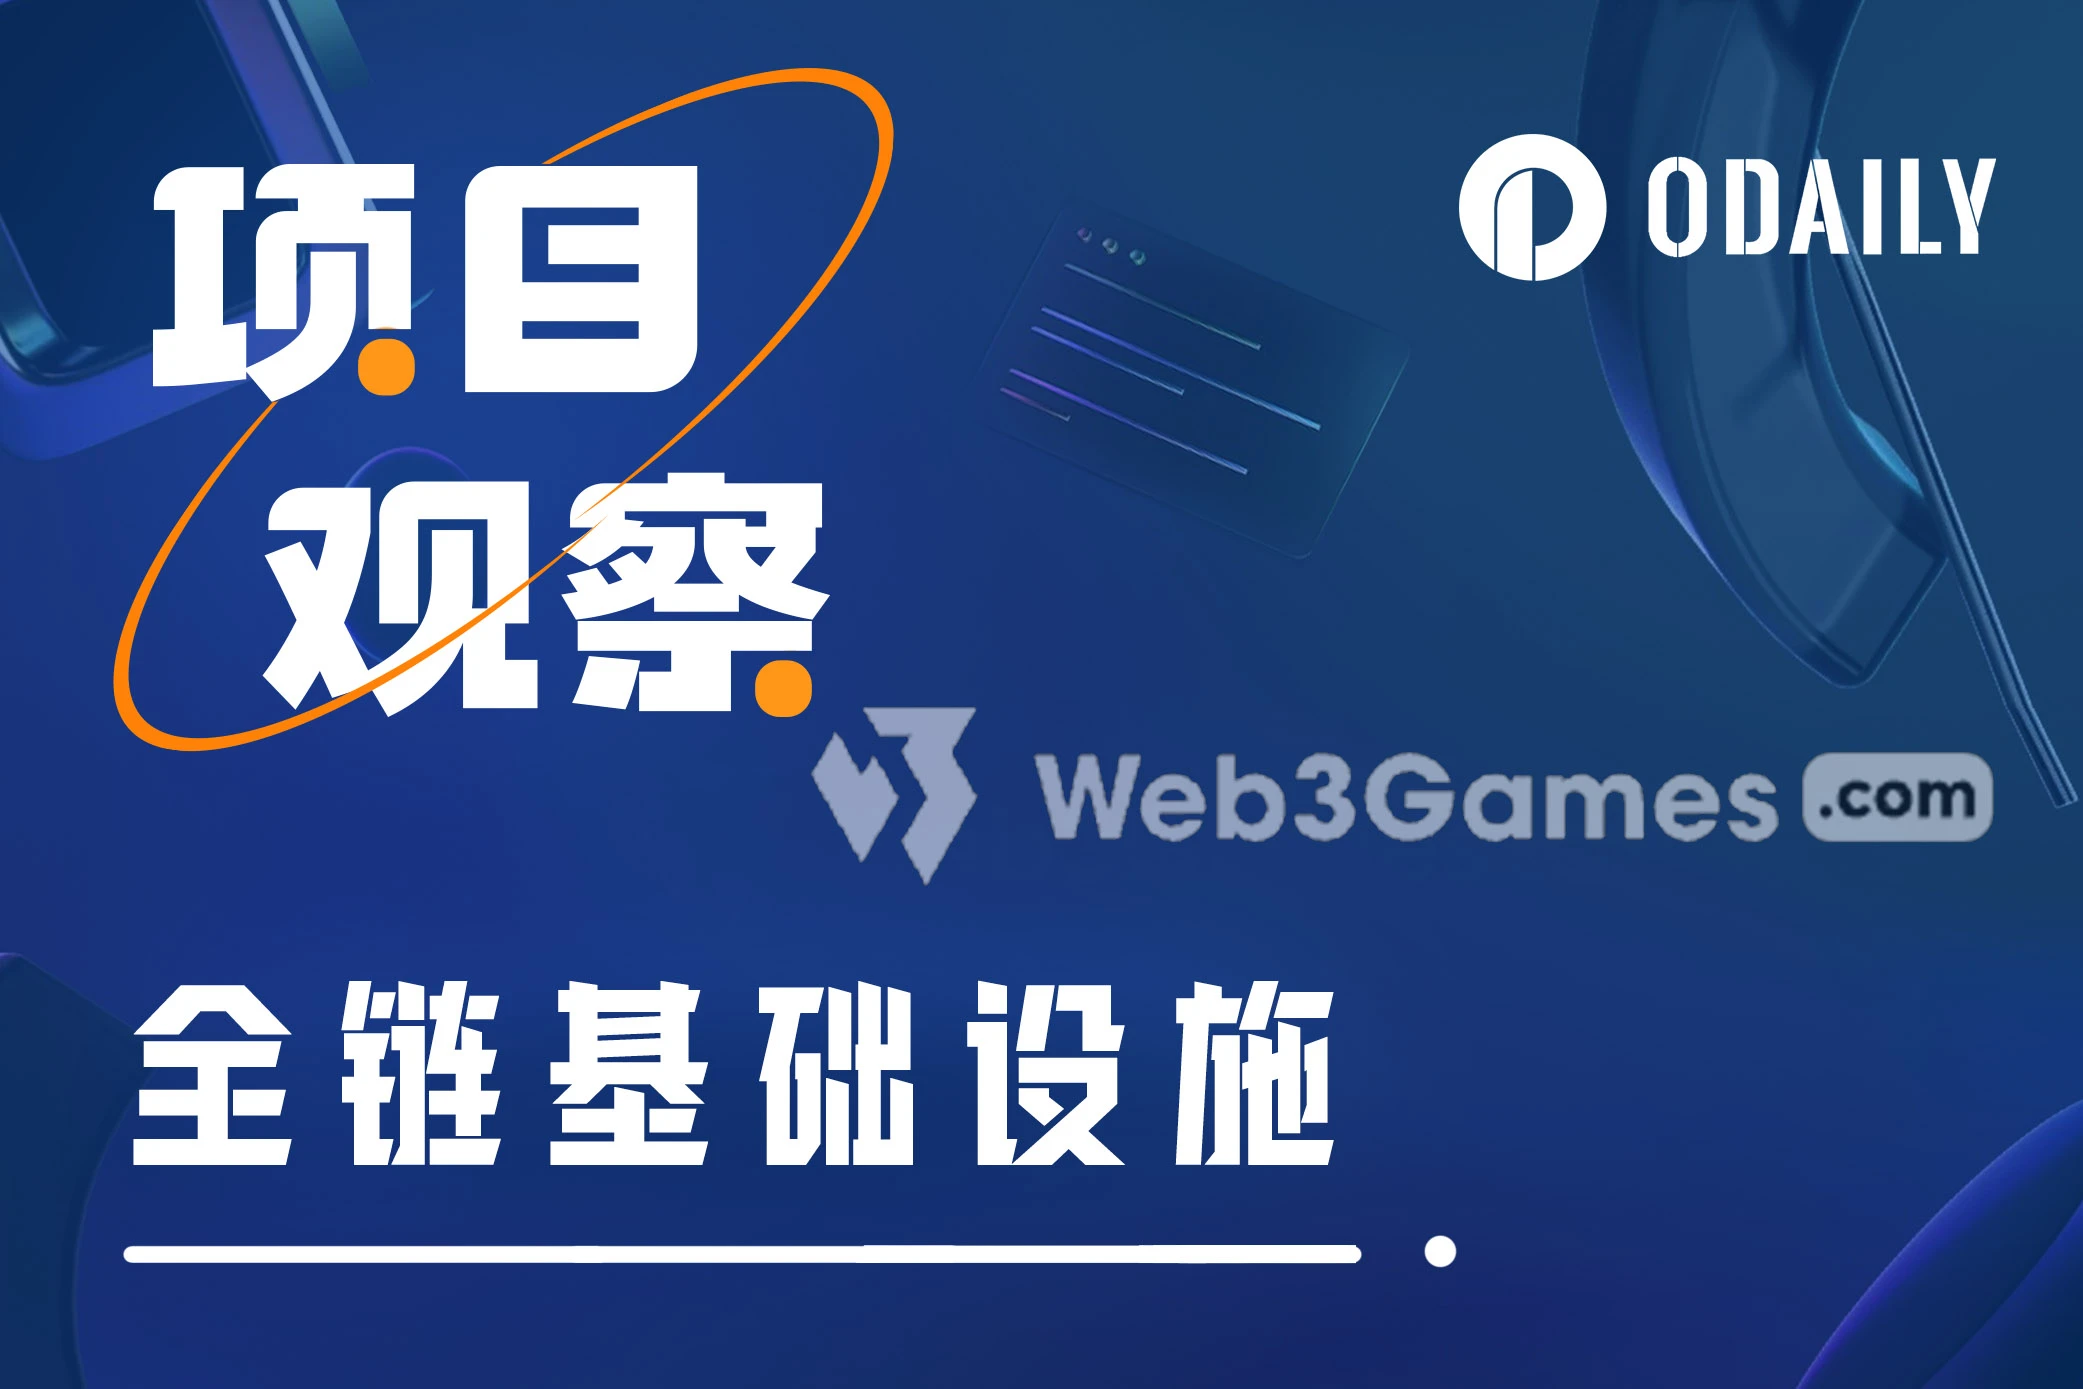 全链游戏生态：Web3Games.com如何转型全链游戏赛道